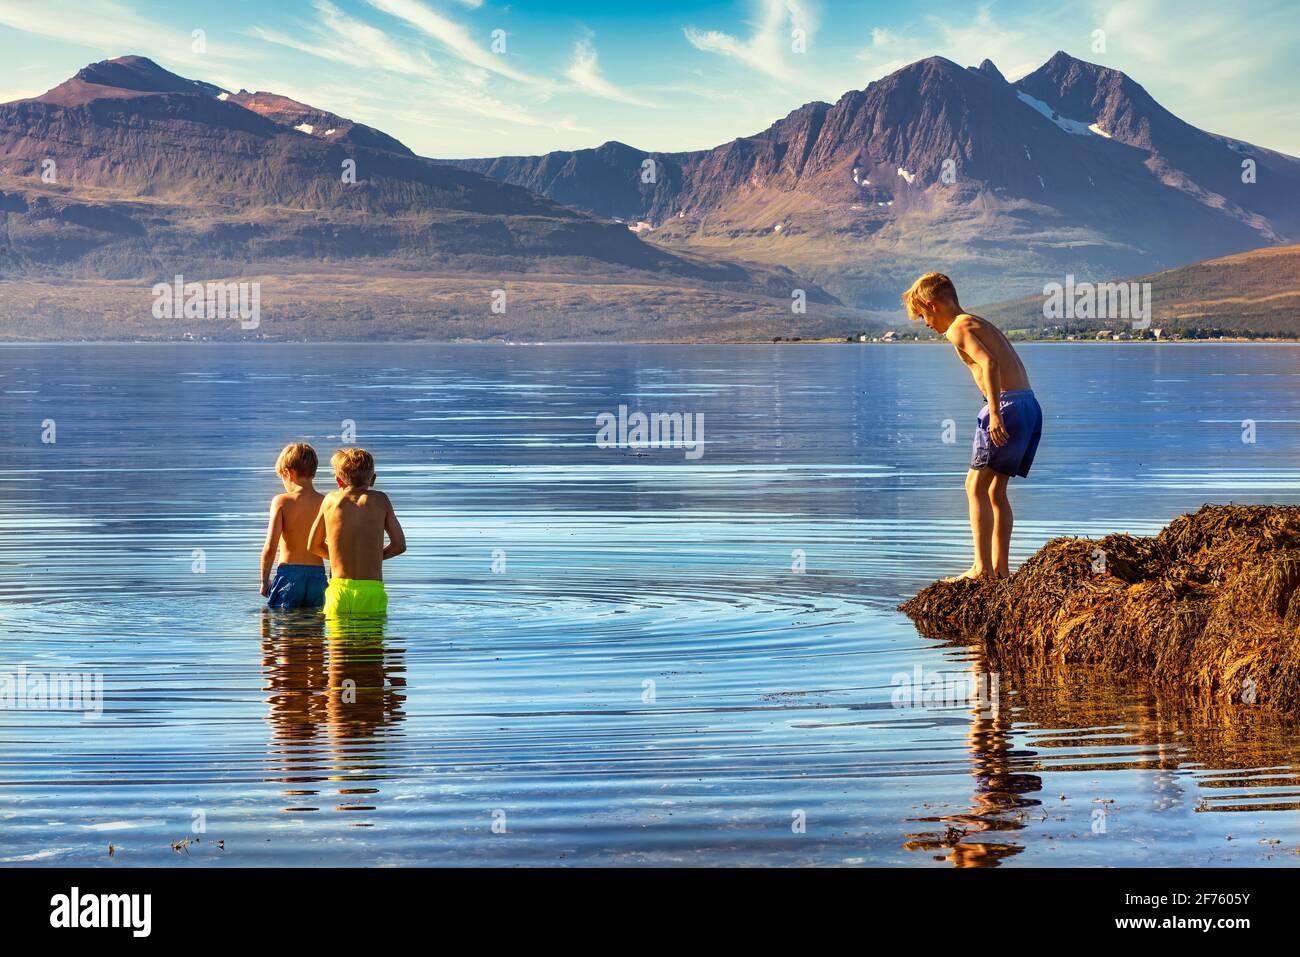 Tromso, Norwegen - 18. August 2016: Zwei Jungen baden im kalten Wasser von Tromso, 350 km nördlich des Polarkreises Stockfoto